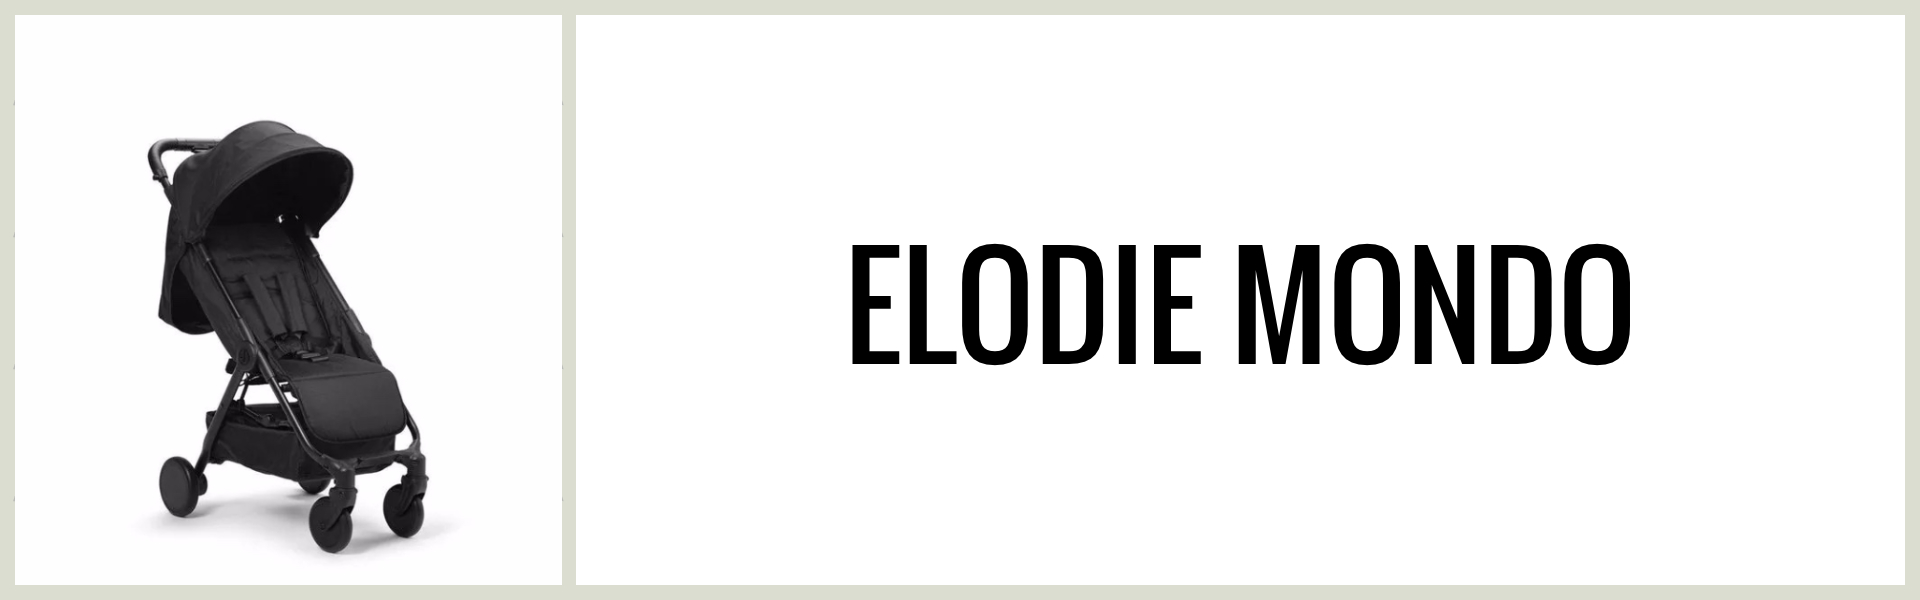 Omdöme: Hur är Elodie Mondo som resevagn?